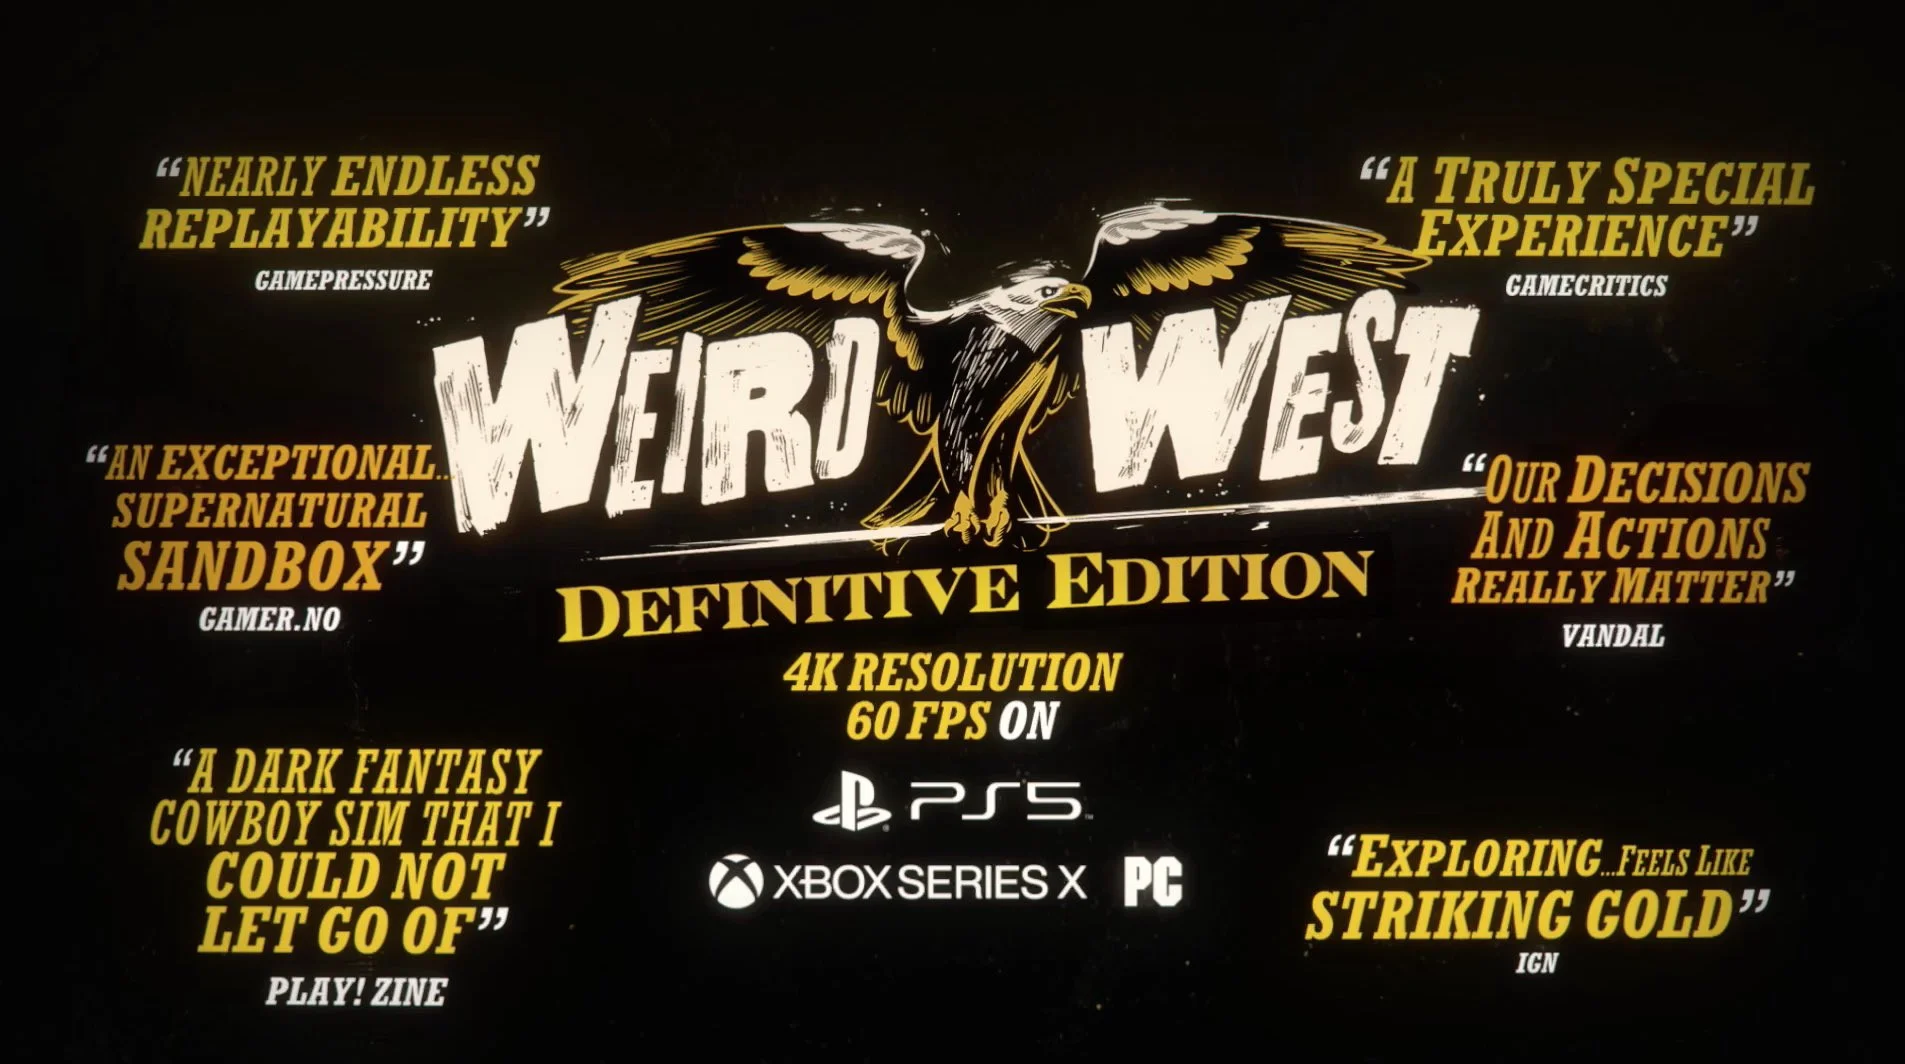 Ролевой вестерн Weird West Definitive Edition прибудет на PS5 и Xbox Series уже 8 мая - фото 1